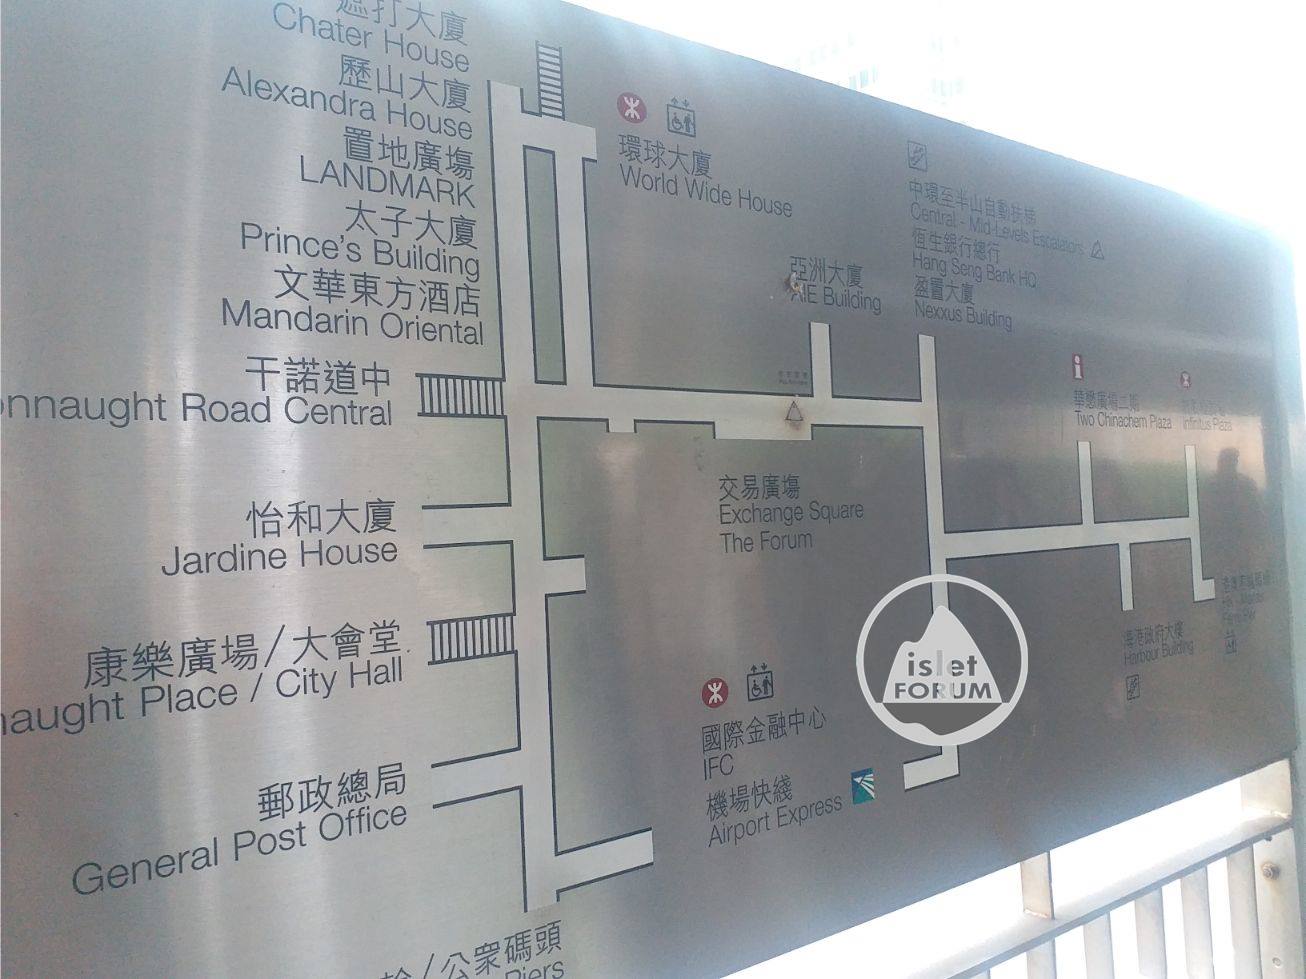 中區行人天橋系統 Central Elevated Walkway (7).jpg